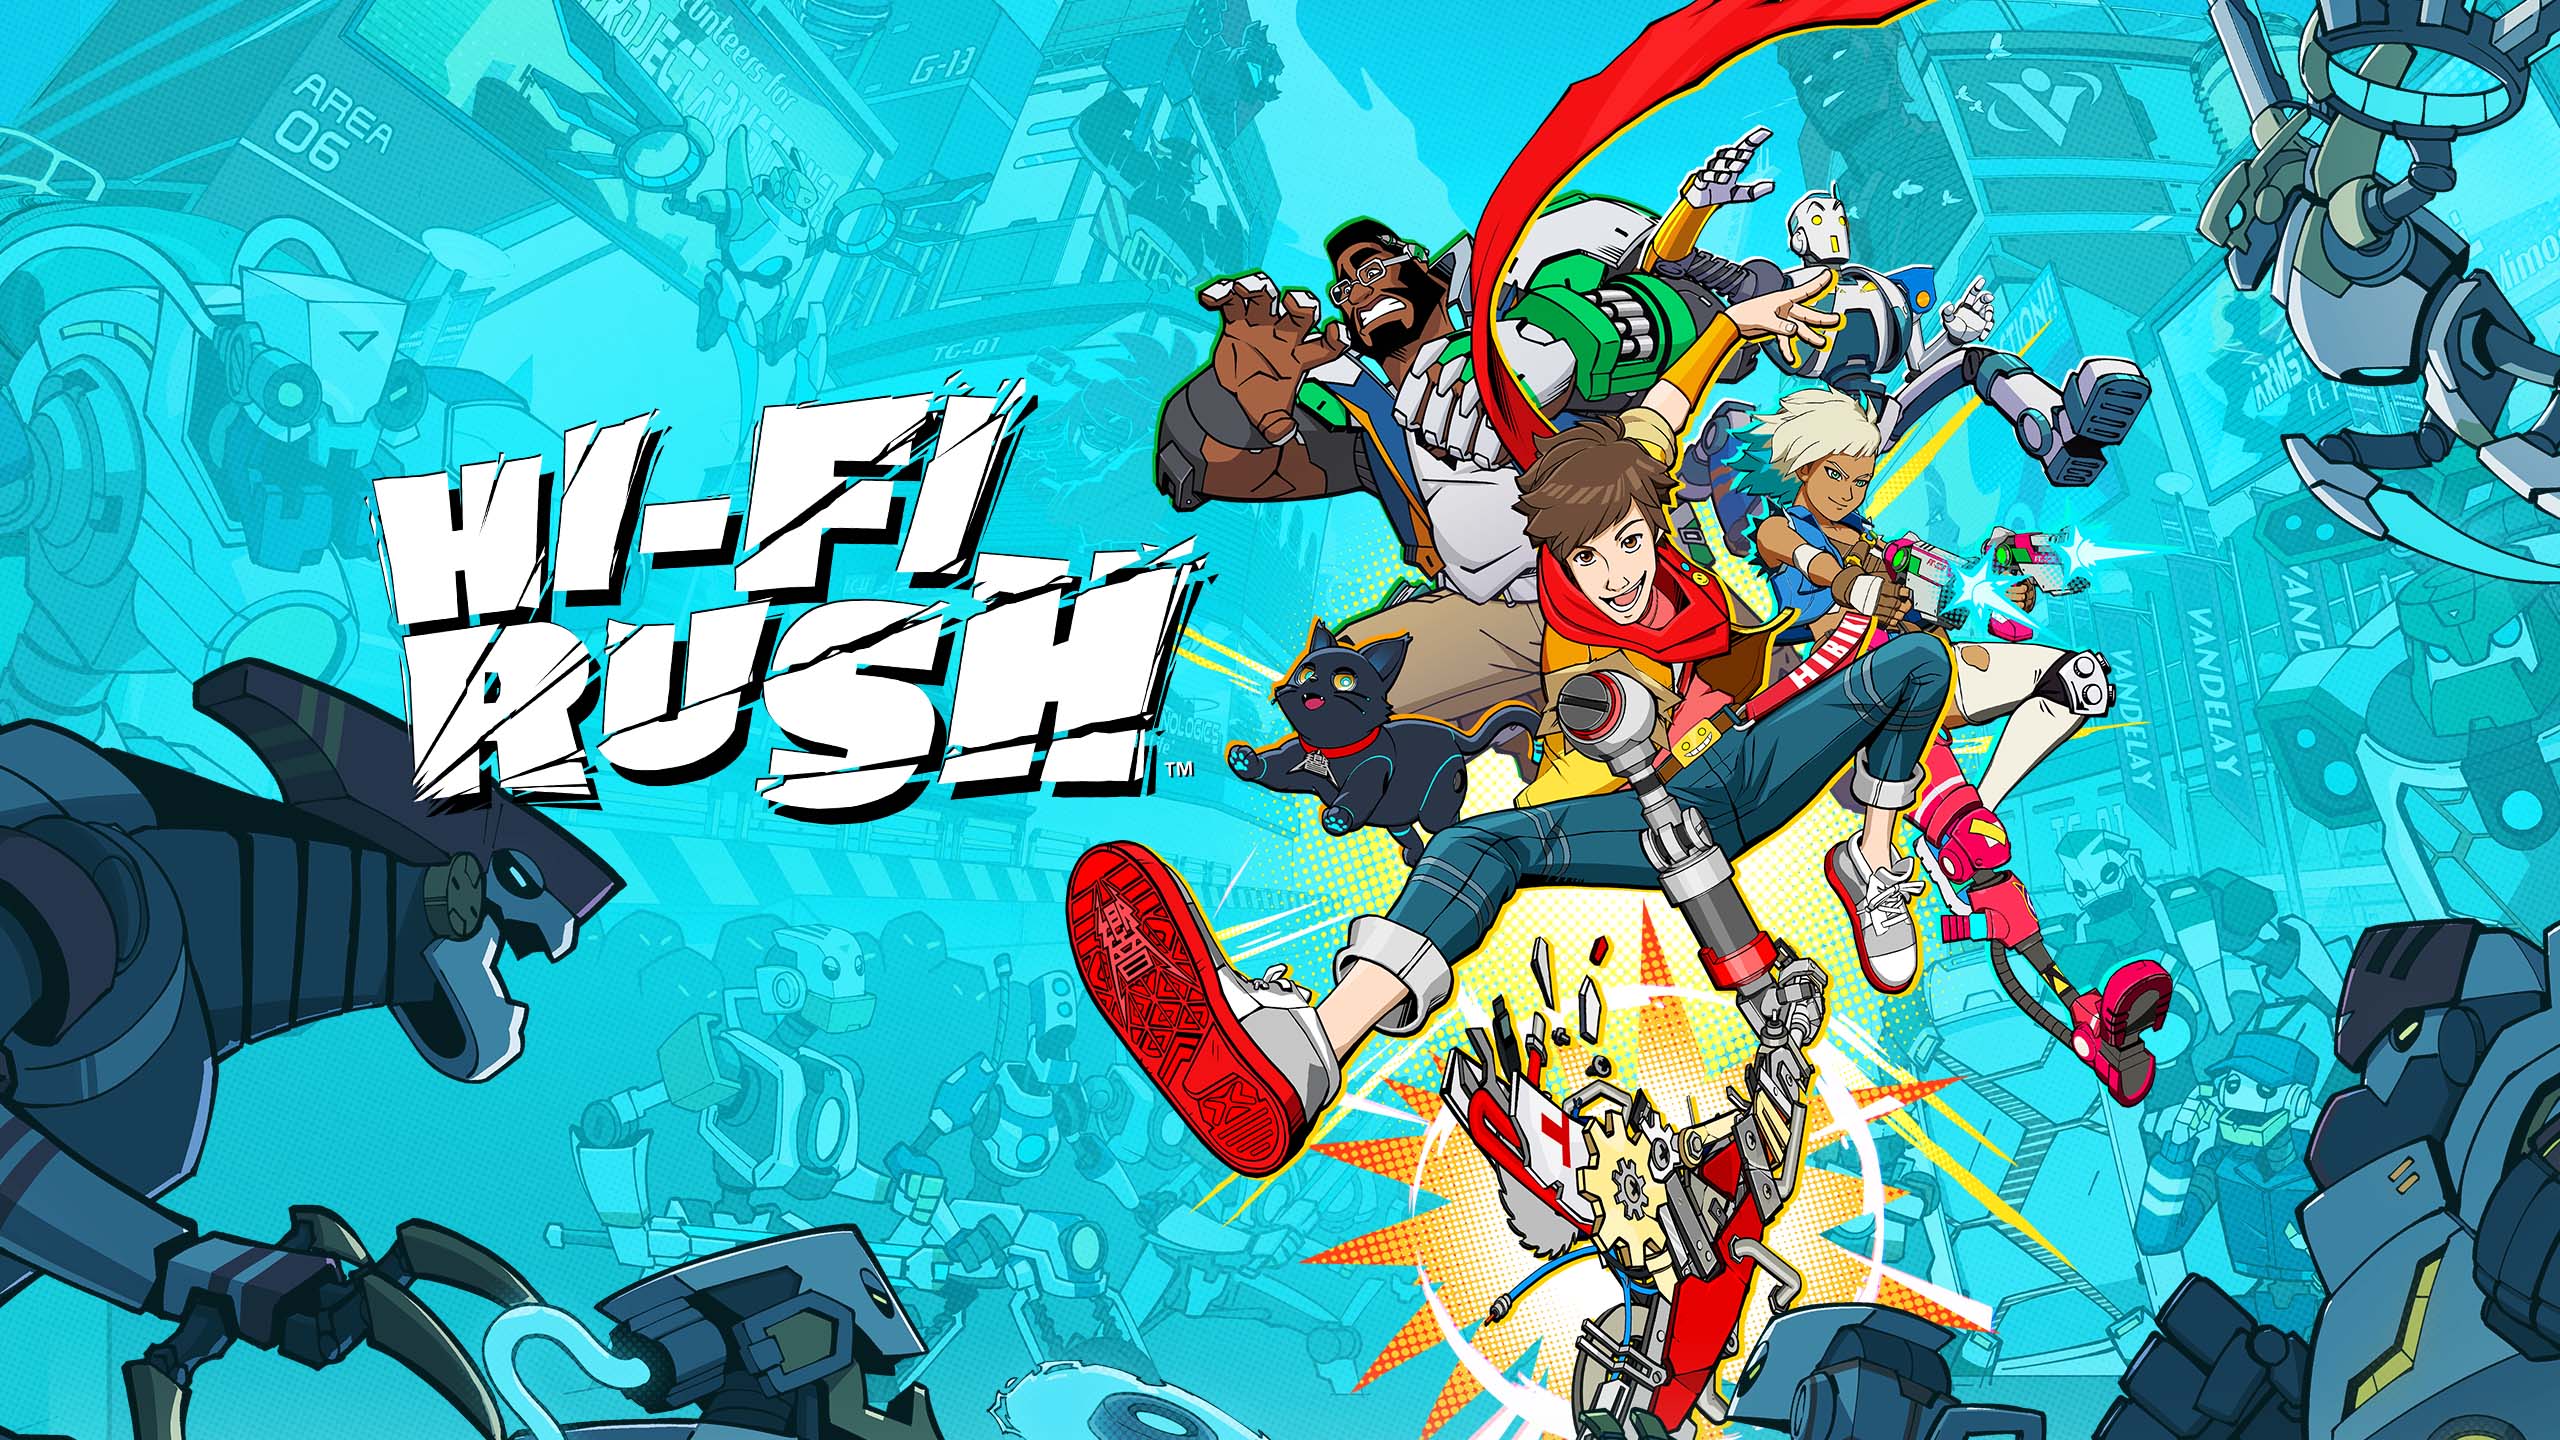 Nueva confirmación de los rumores de que Hi-Fi Rush aparecerá en Nintendo Switch y PlayStation